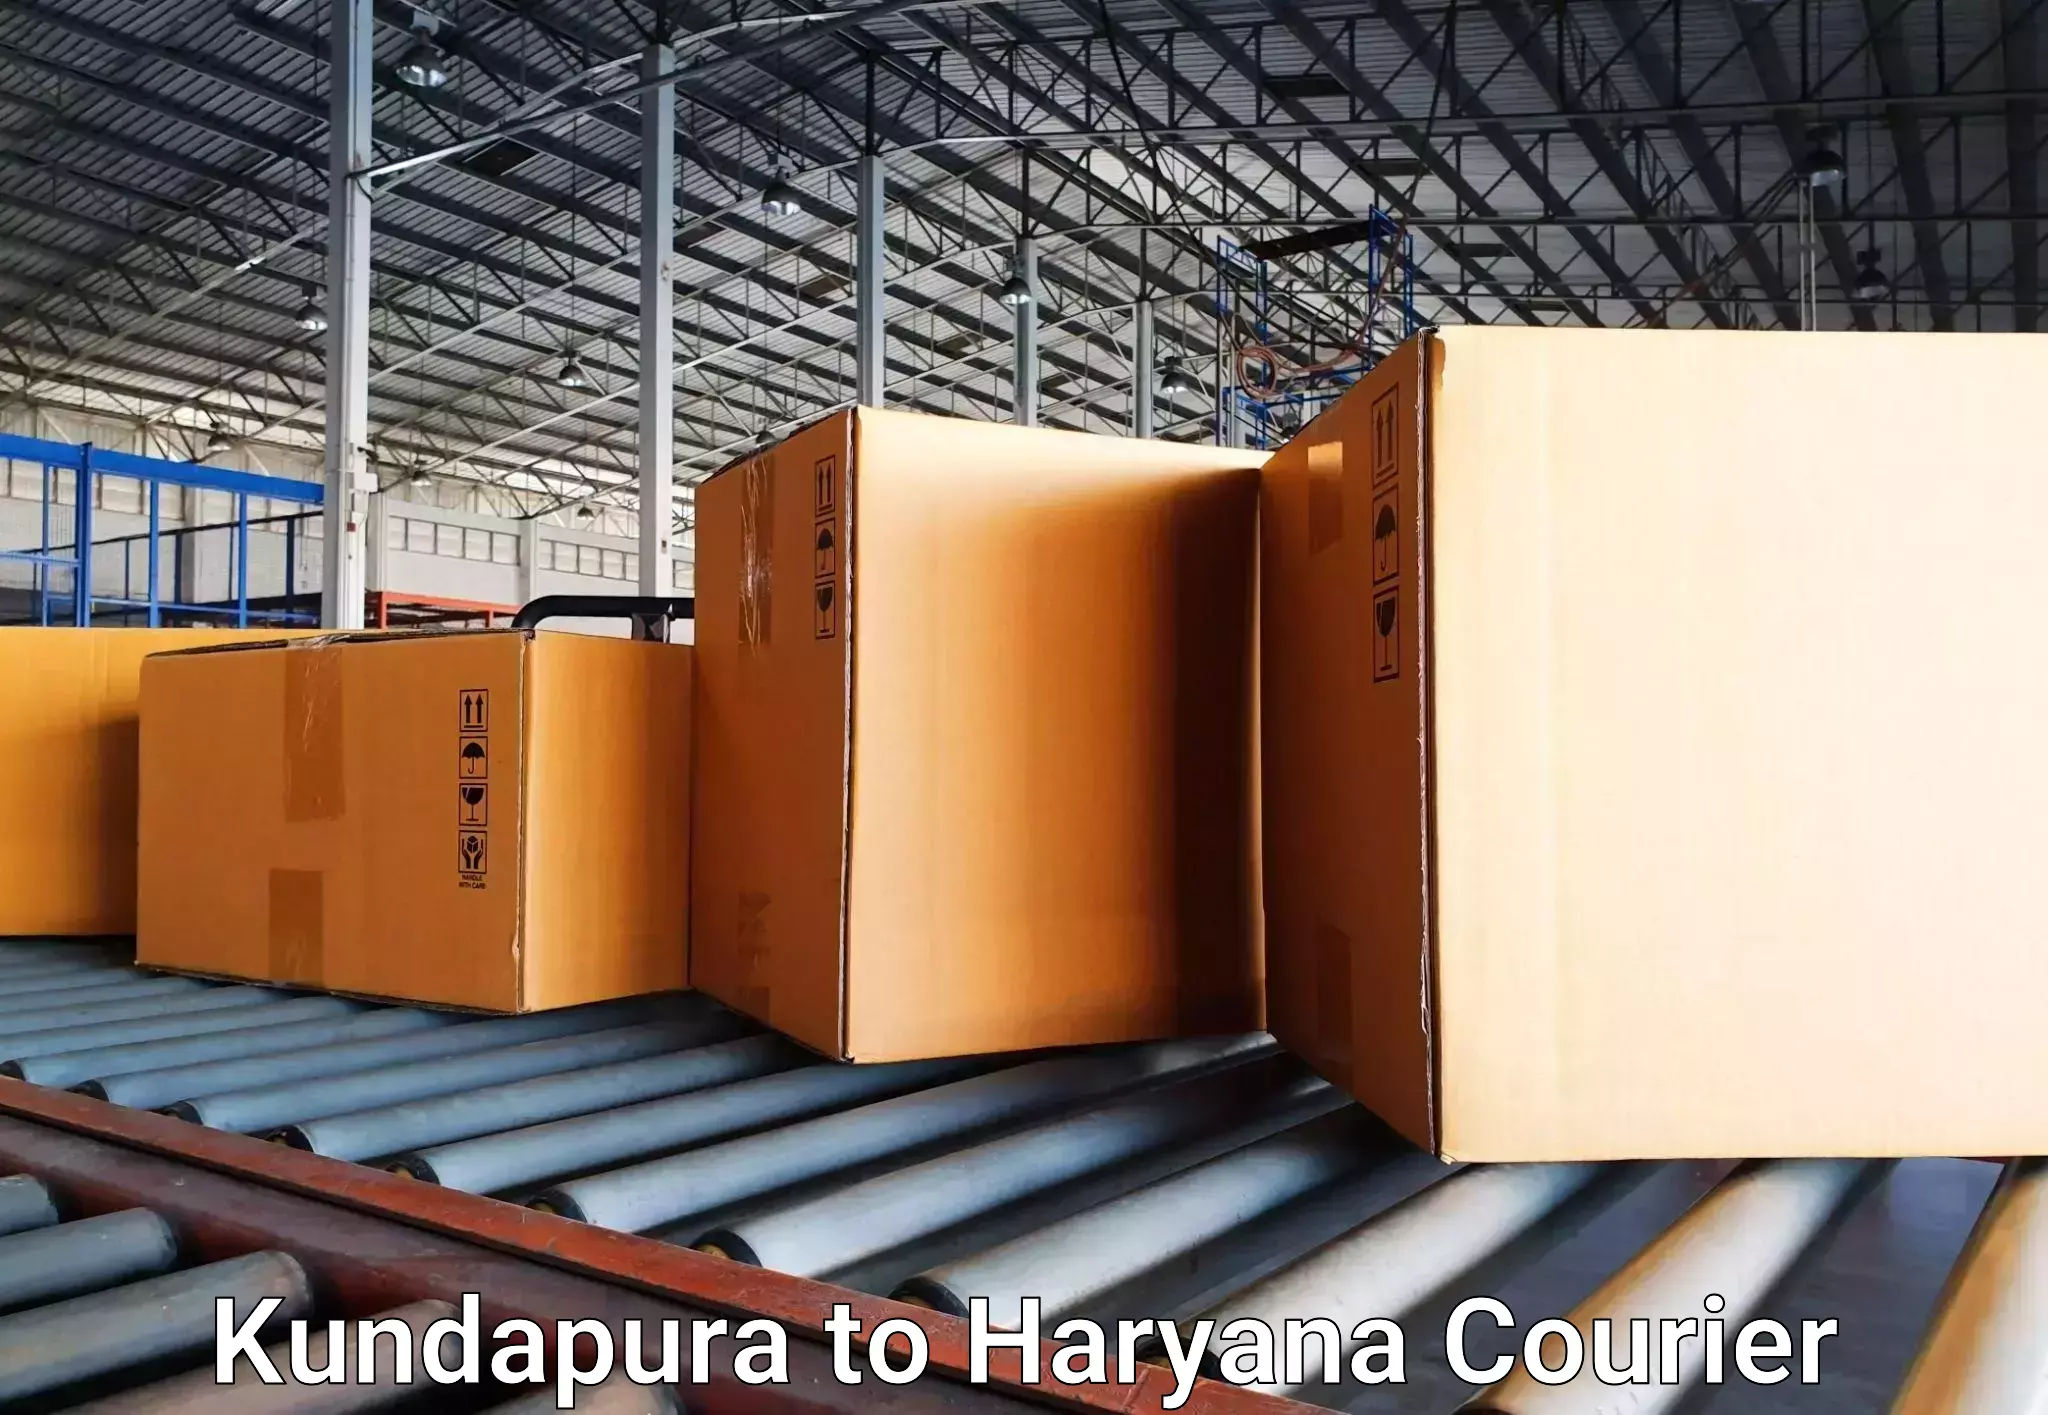 Luggage transport service Kundapura to NCR Haryana